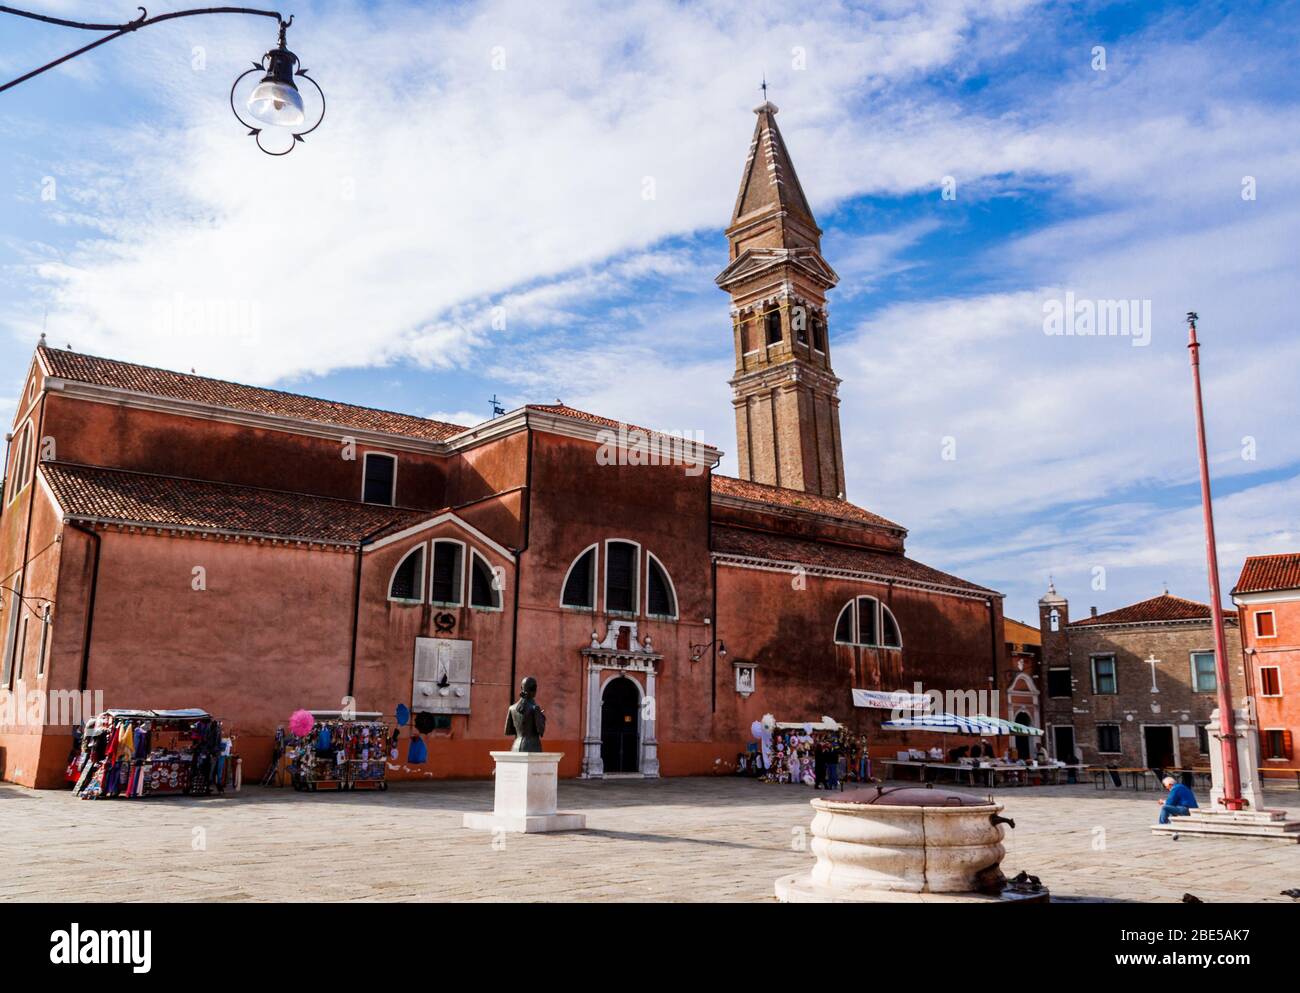 Venedig, Italien - Oktober 2017: Kirche San Martino mit der Fallkapelle auf Burano, Insel in der venezianischen Lagune. Stockfoto